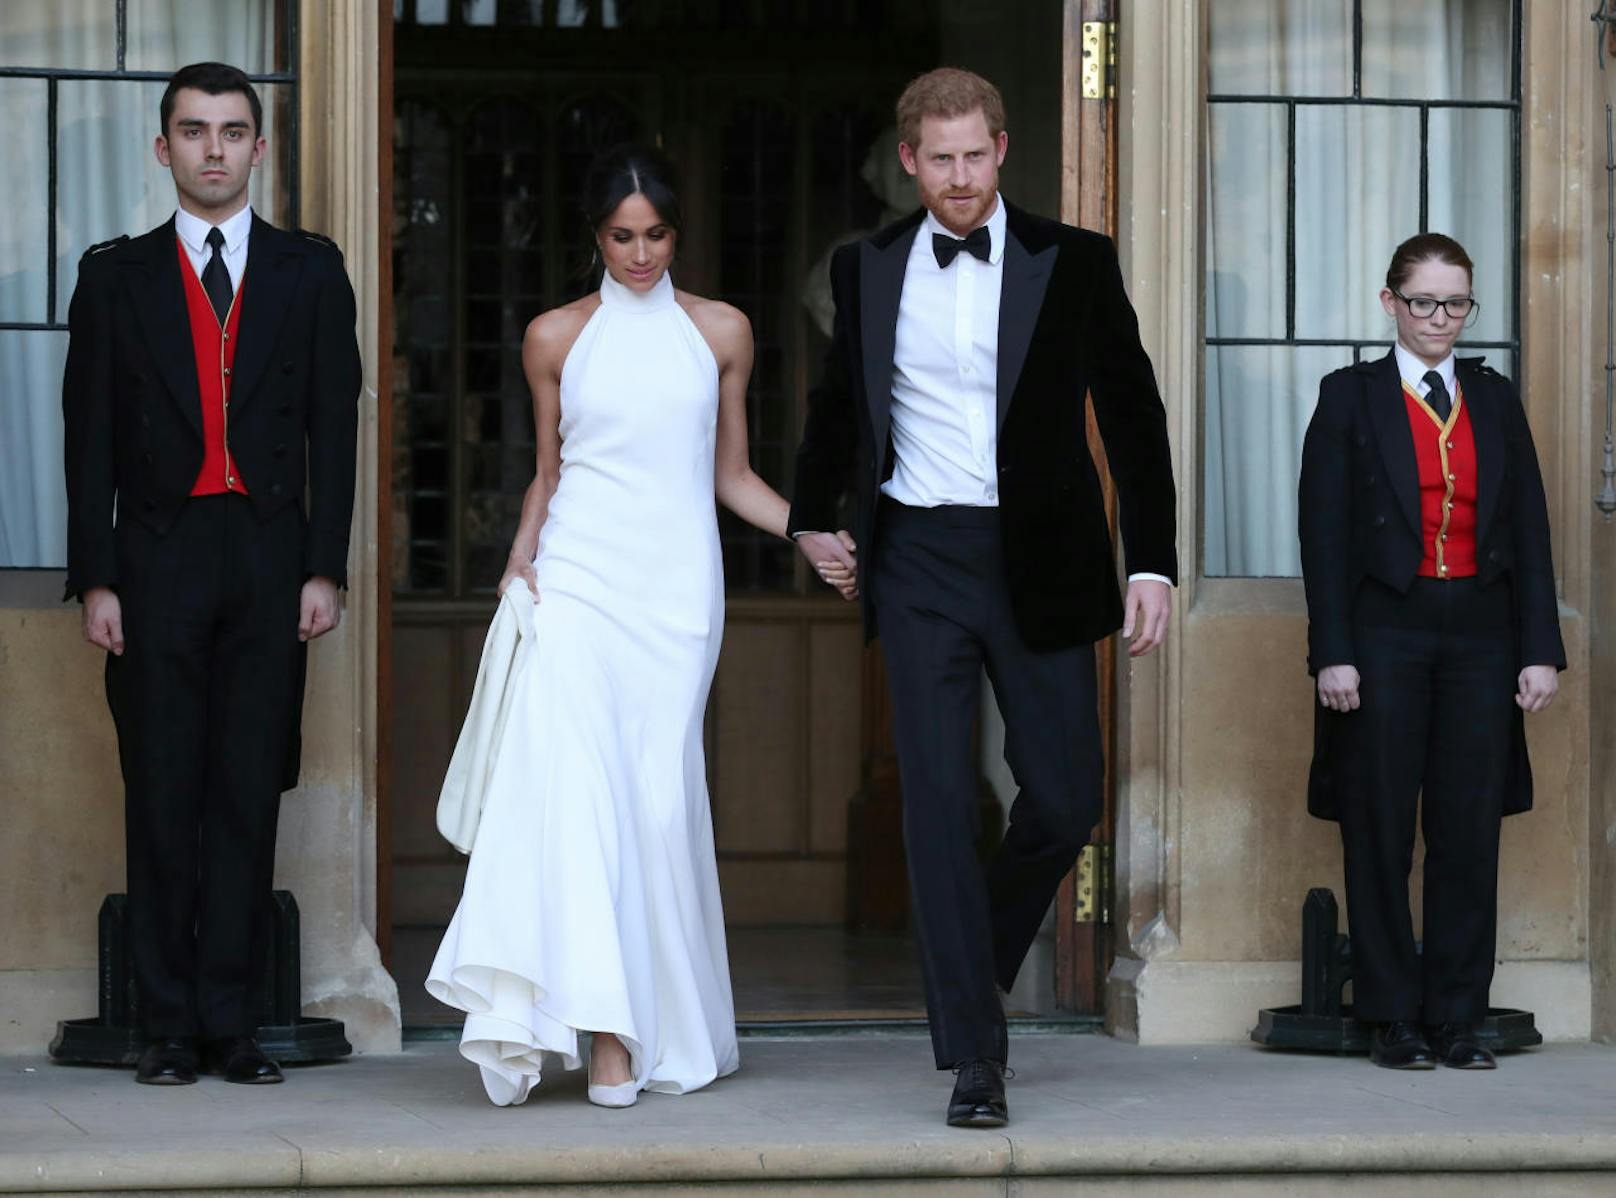 Nach einer romantischen Hochzeitszeremonie in einem <a href="https://www.heute.at/life/fashion_beauty/story/Meghan-Markles-Brautkleid--Eine-gewagte--berraschung-51753587" target="_blank">gewagten Brautkleid von Givenchy</a> schlüpfte Meghan, nun Duchess of Sussex, in ihr zweites Outfit des Tages.